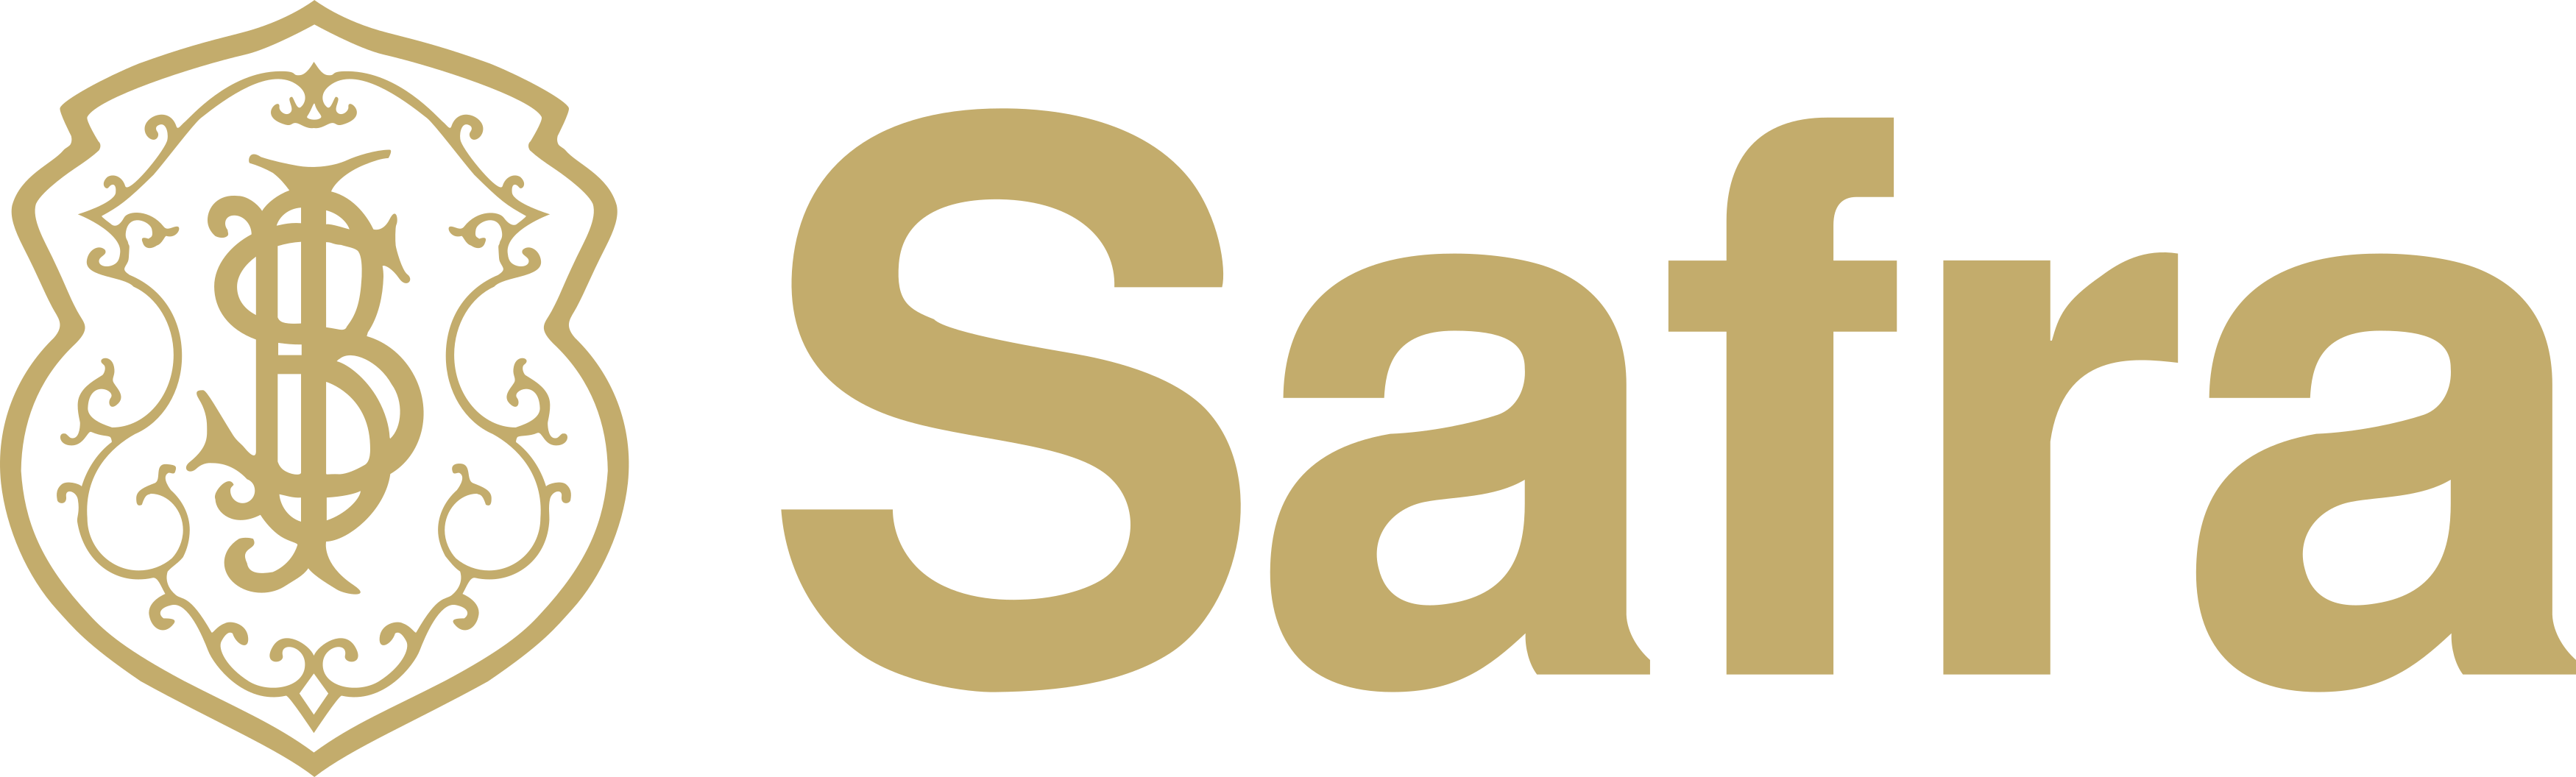 Banco Safra Logo 1 • Dot Digital Group - Banco Safra, Transparent background PNG HD thumbnail